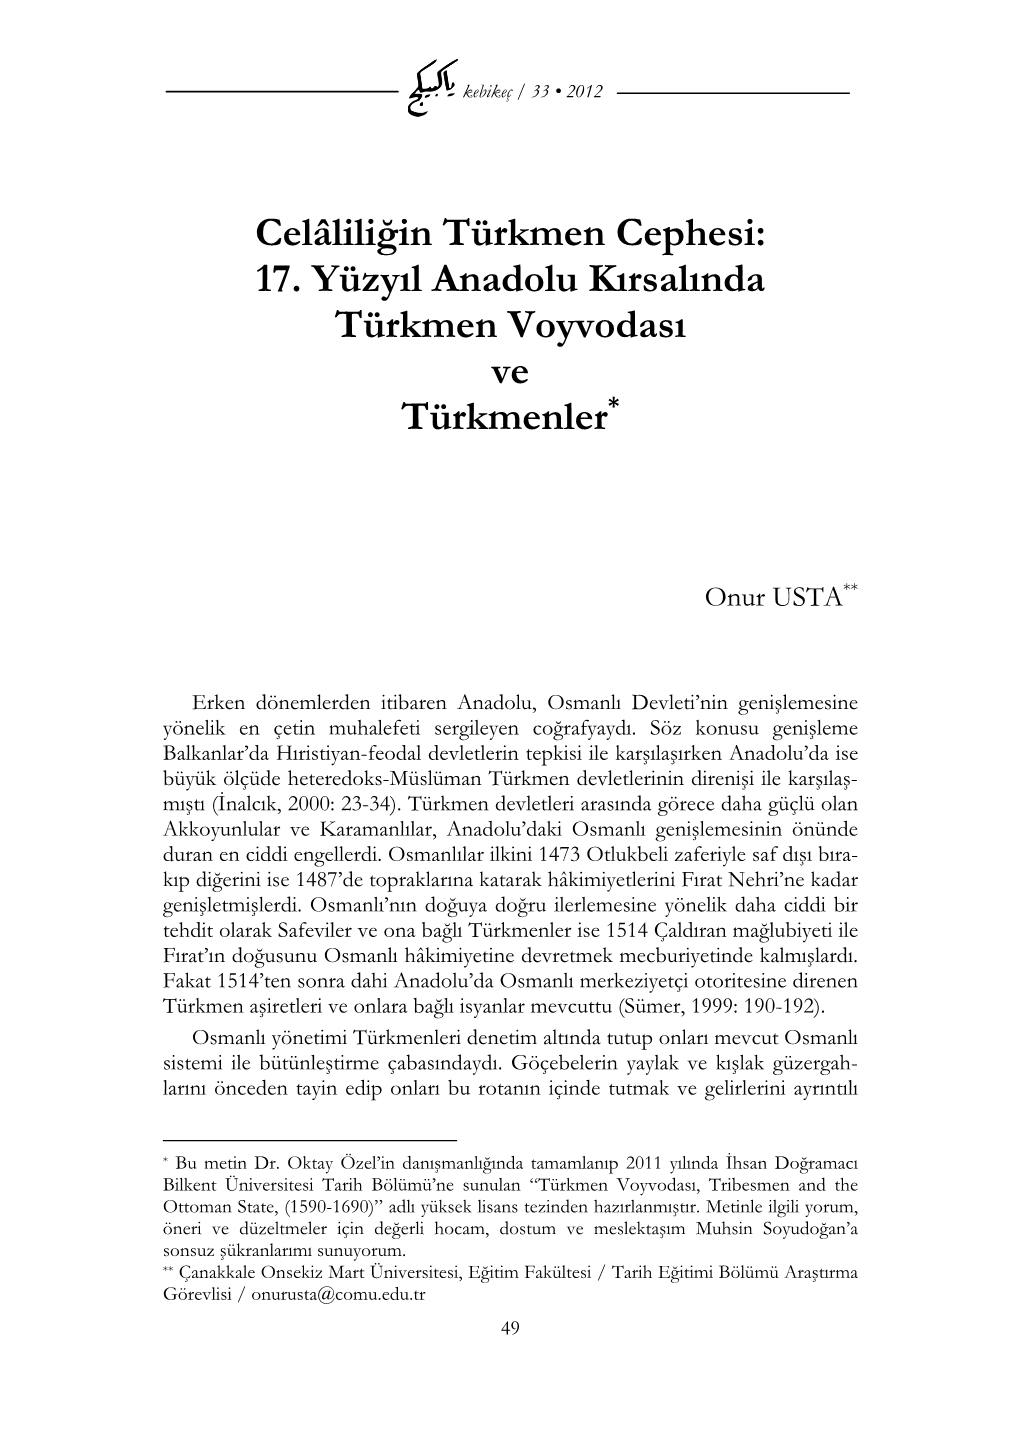 17. Yüzyıl Anadolu Kırsalında Türkmen Voyvodası Ve Türkmenler*